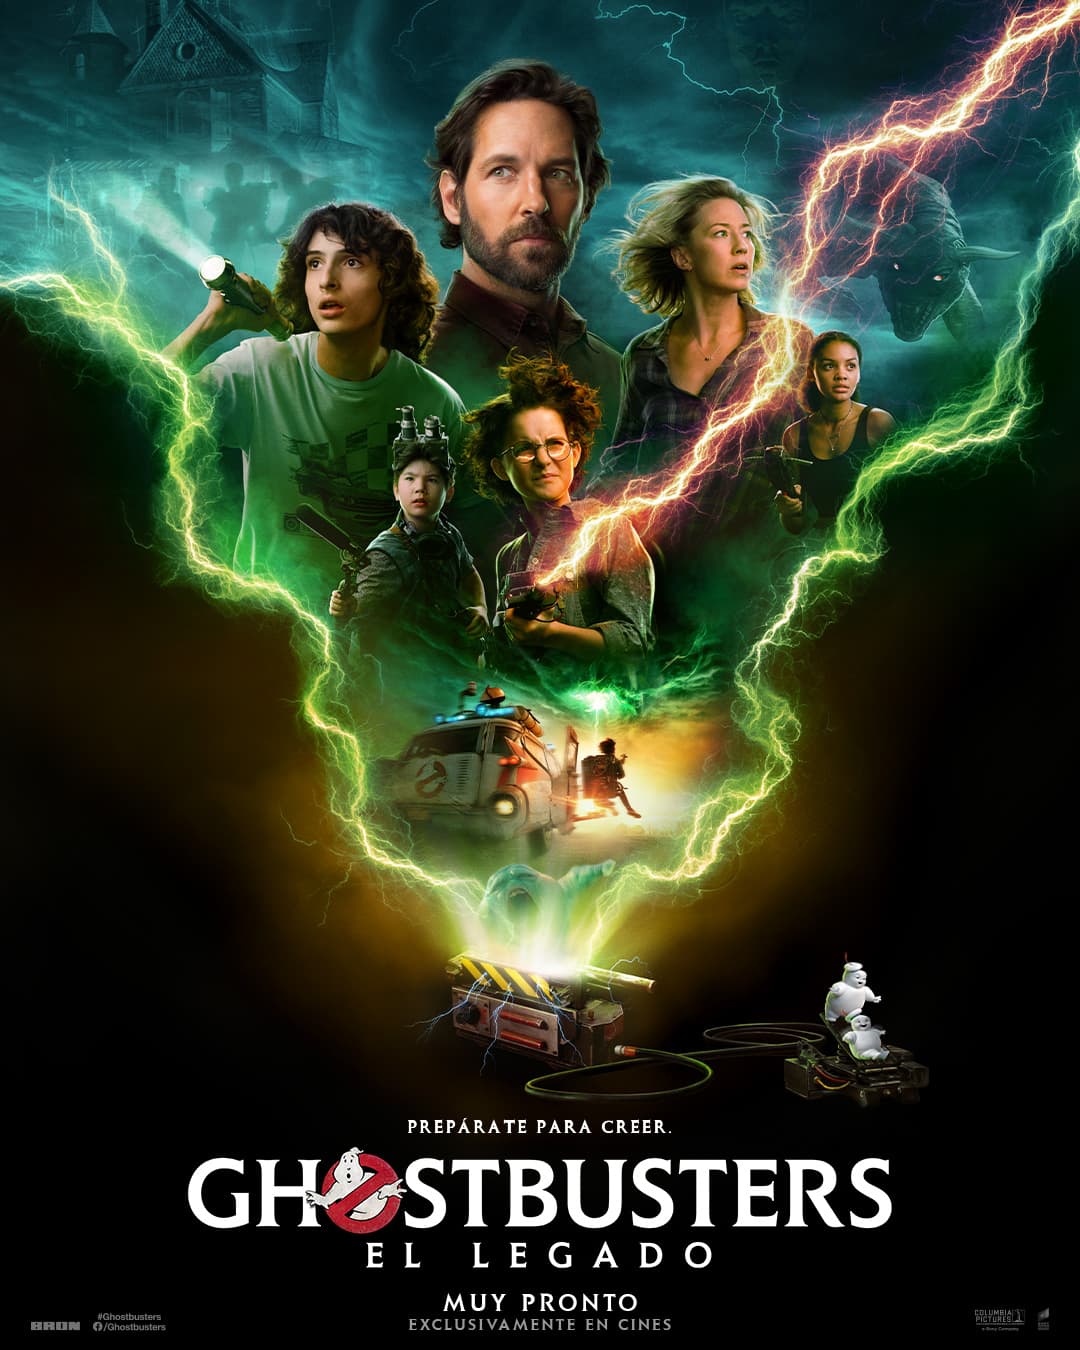 Ghostbusters el legado poster